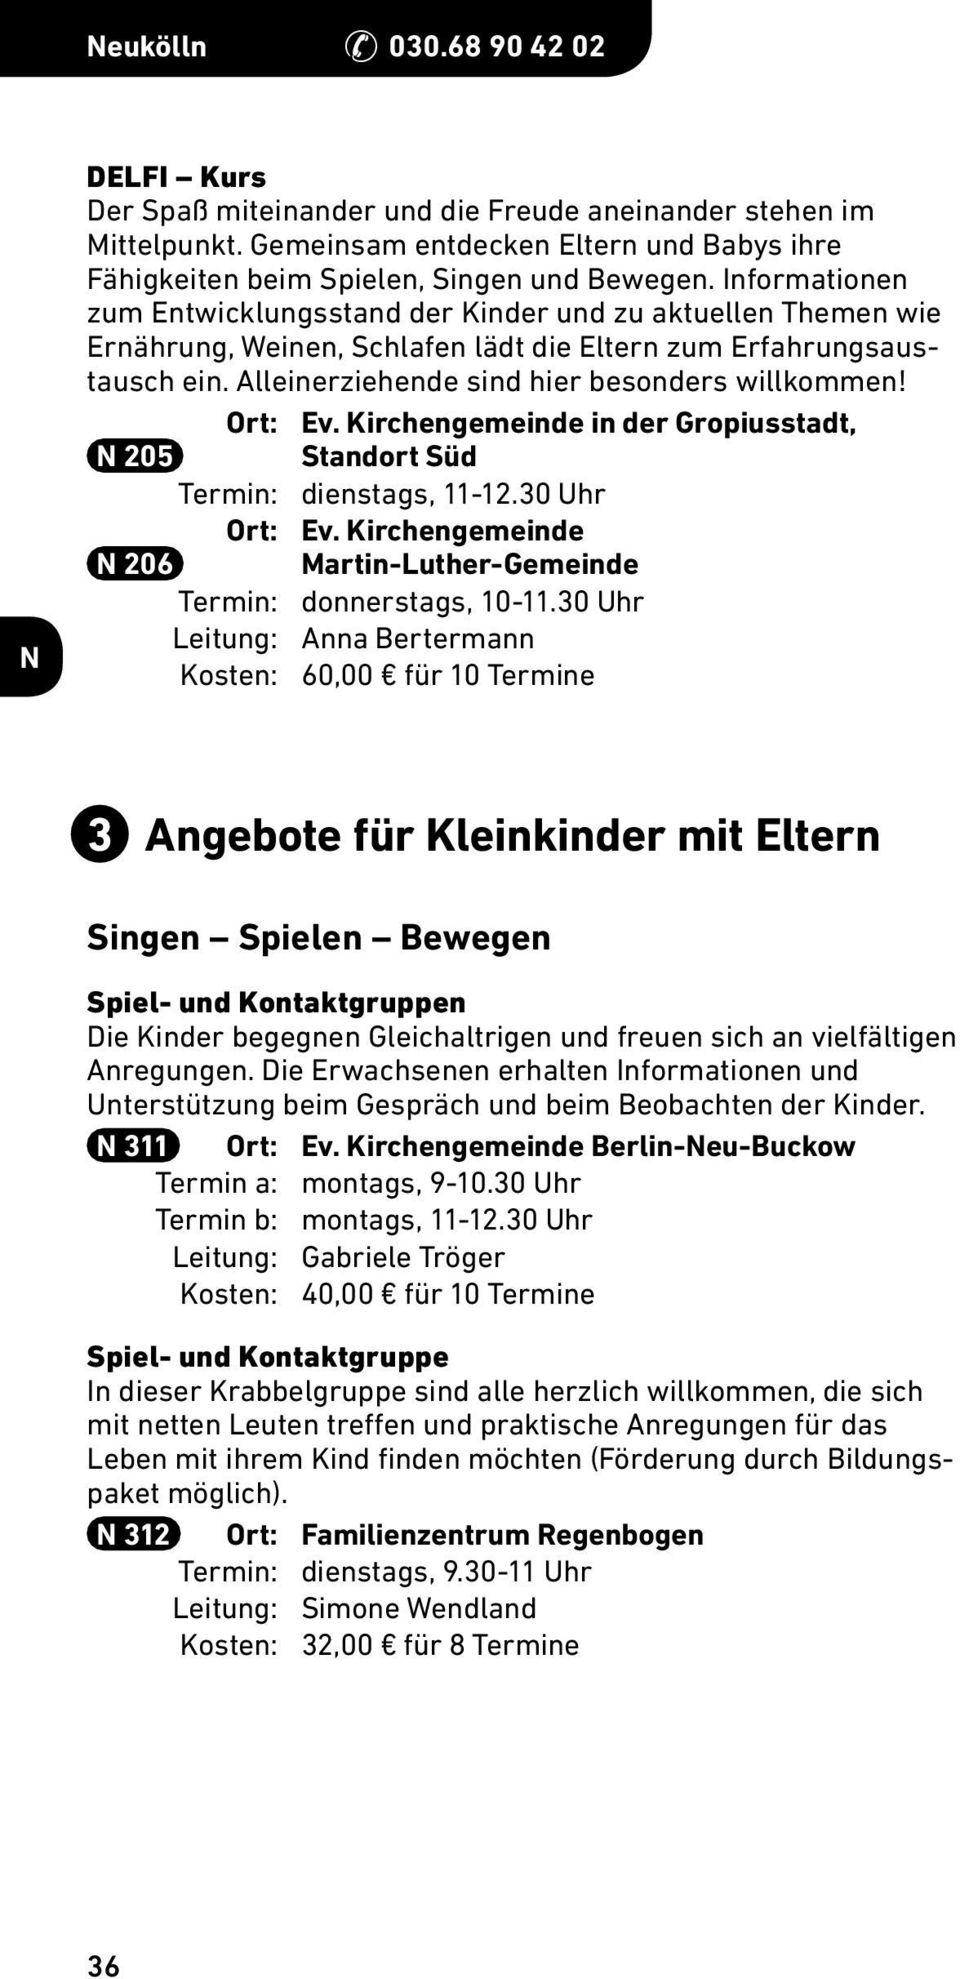 205 Standort Süd Termin: dienstags, 11-12.30 Uhr Ort: Ev. Kirchengemeinde 206 Martin-Luther-Gemeinde Termin: donnerstags, 10-11.